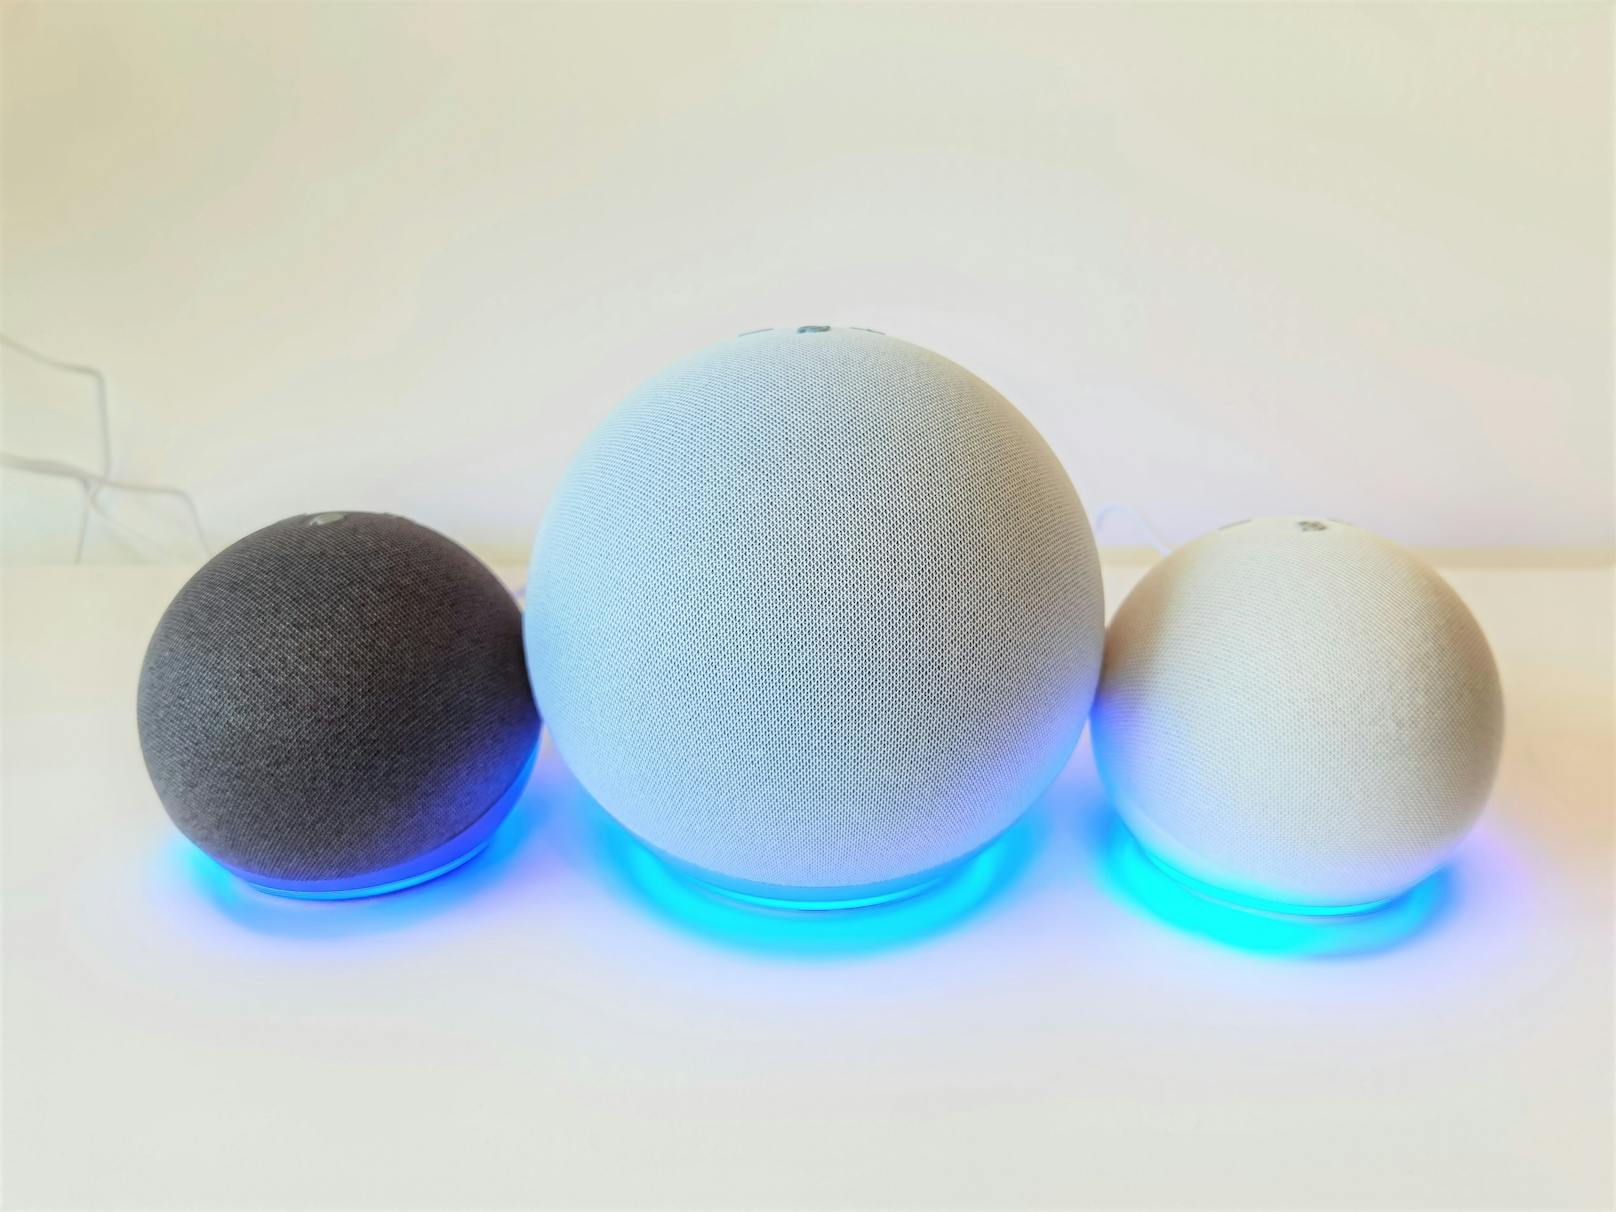 Amazon hat alle drei seiner Echo-Speaker, den Echo, den Echo Dot und neu den Echo Dot mit LED-Anzeige im 2020er-Look auf den Markt gebracht.